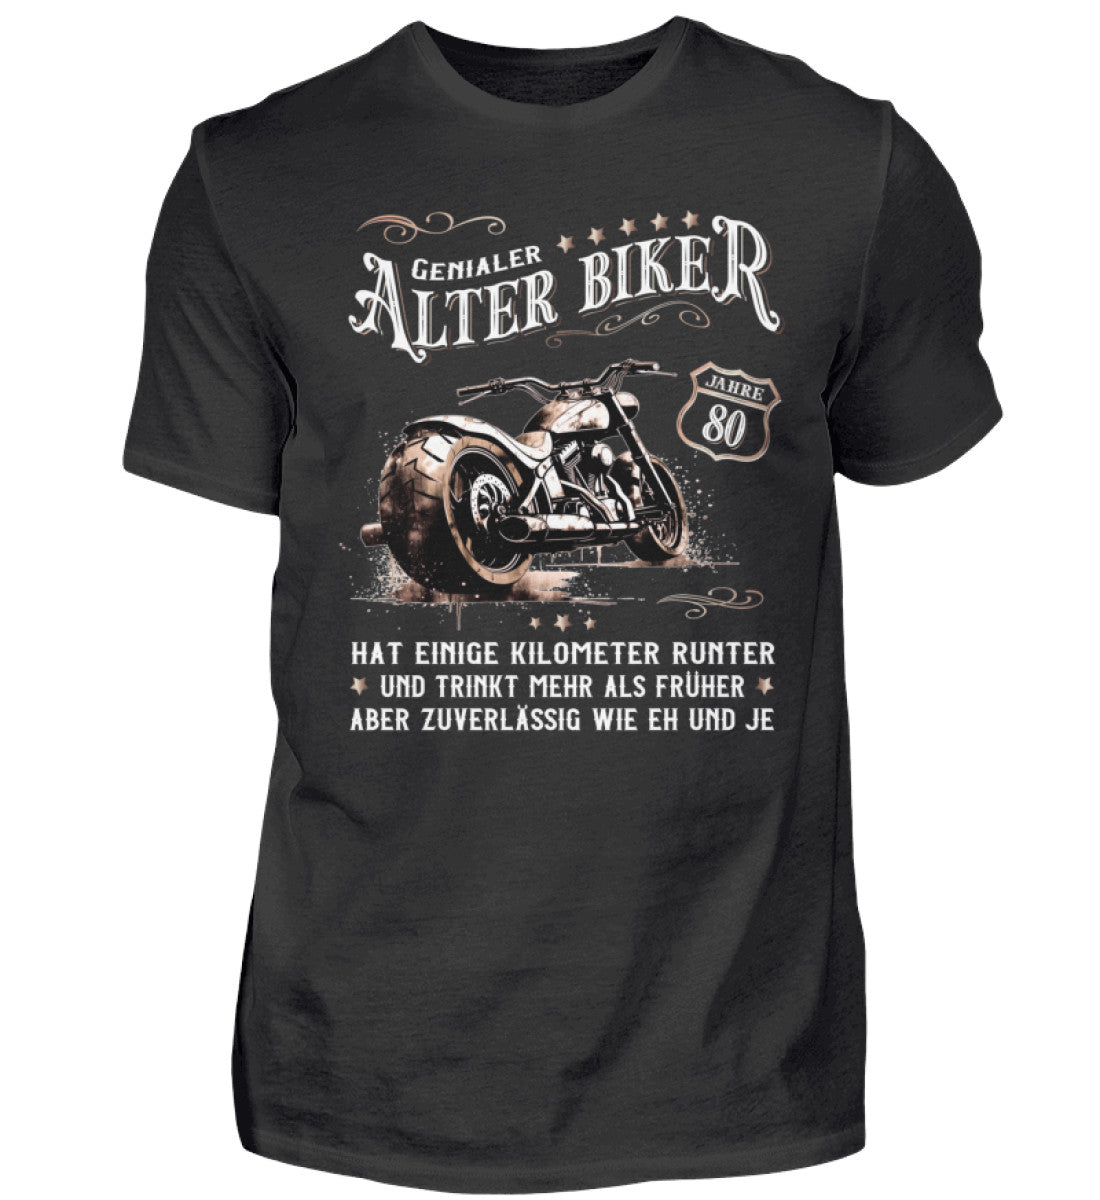 Ein Biker T-Shirt zum Geburtstag für Motorradfahrer von Wingbikers mit dem Aufdruck, Alter Biker - 80 Jahre - Einige Kilometer runter, trinkt mehr - aber zuverlässig wie eh und je - in schwarz.